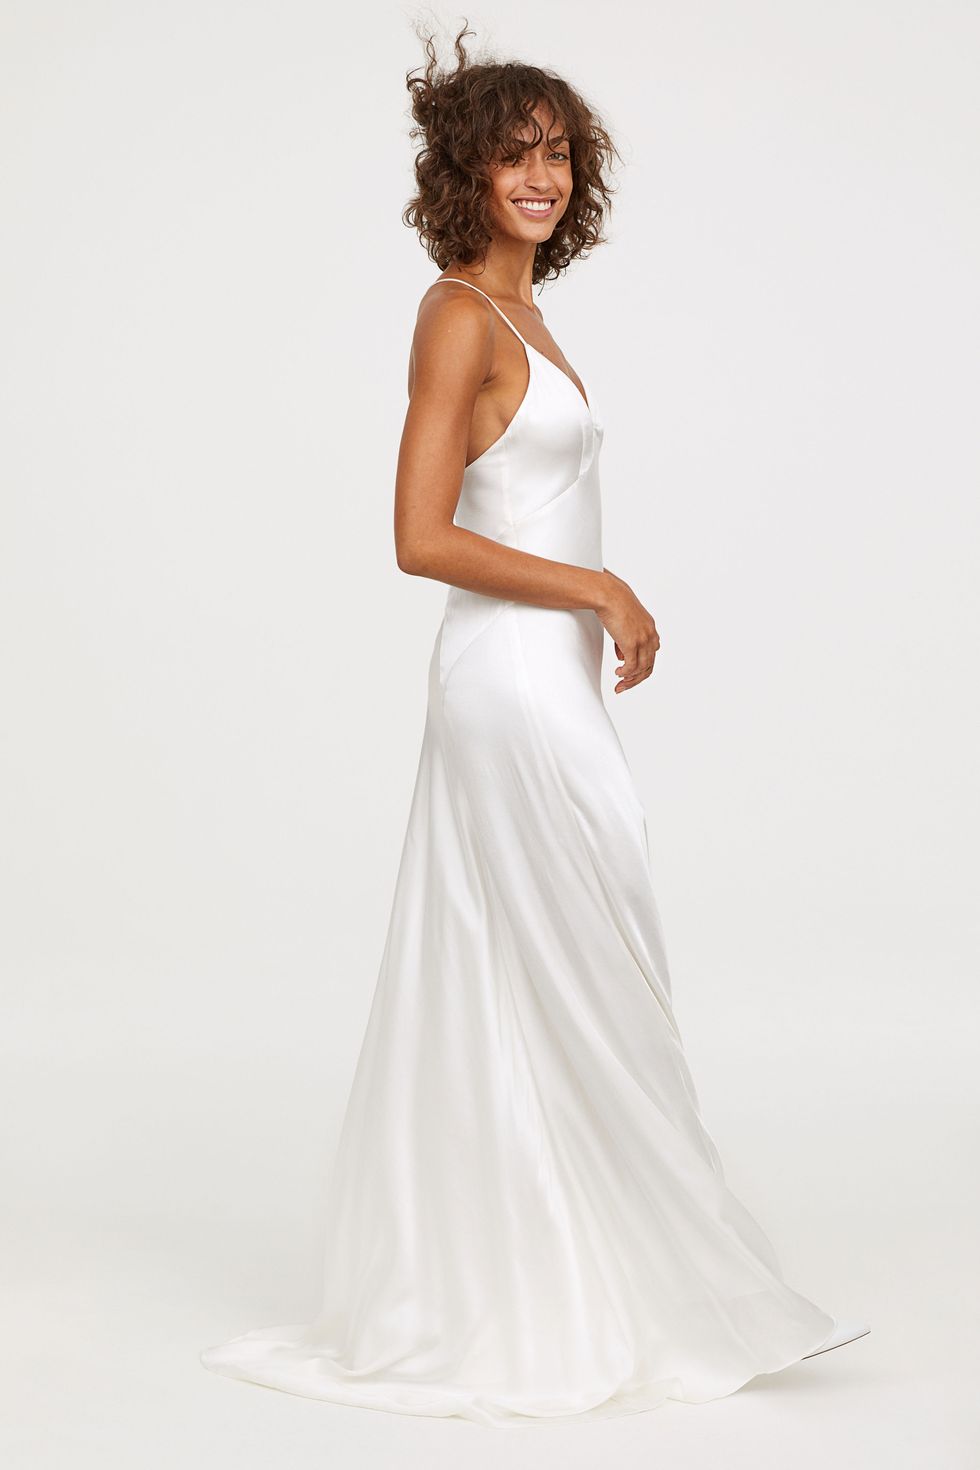 María Reparador paquete H&M vende un nuevo vestido de novia muy barato y de estilo lencero